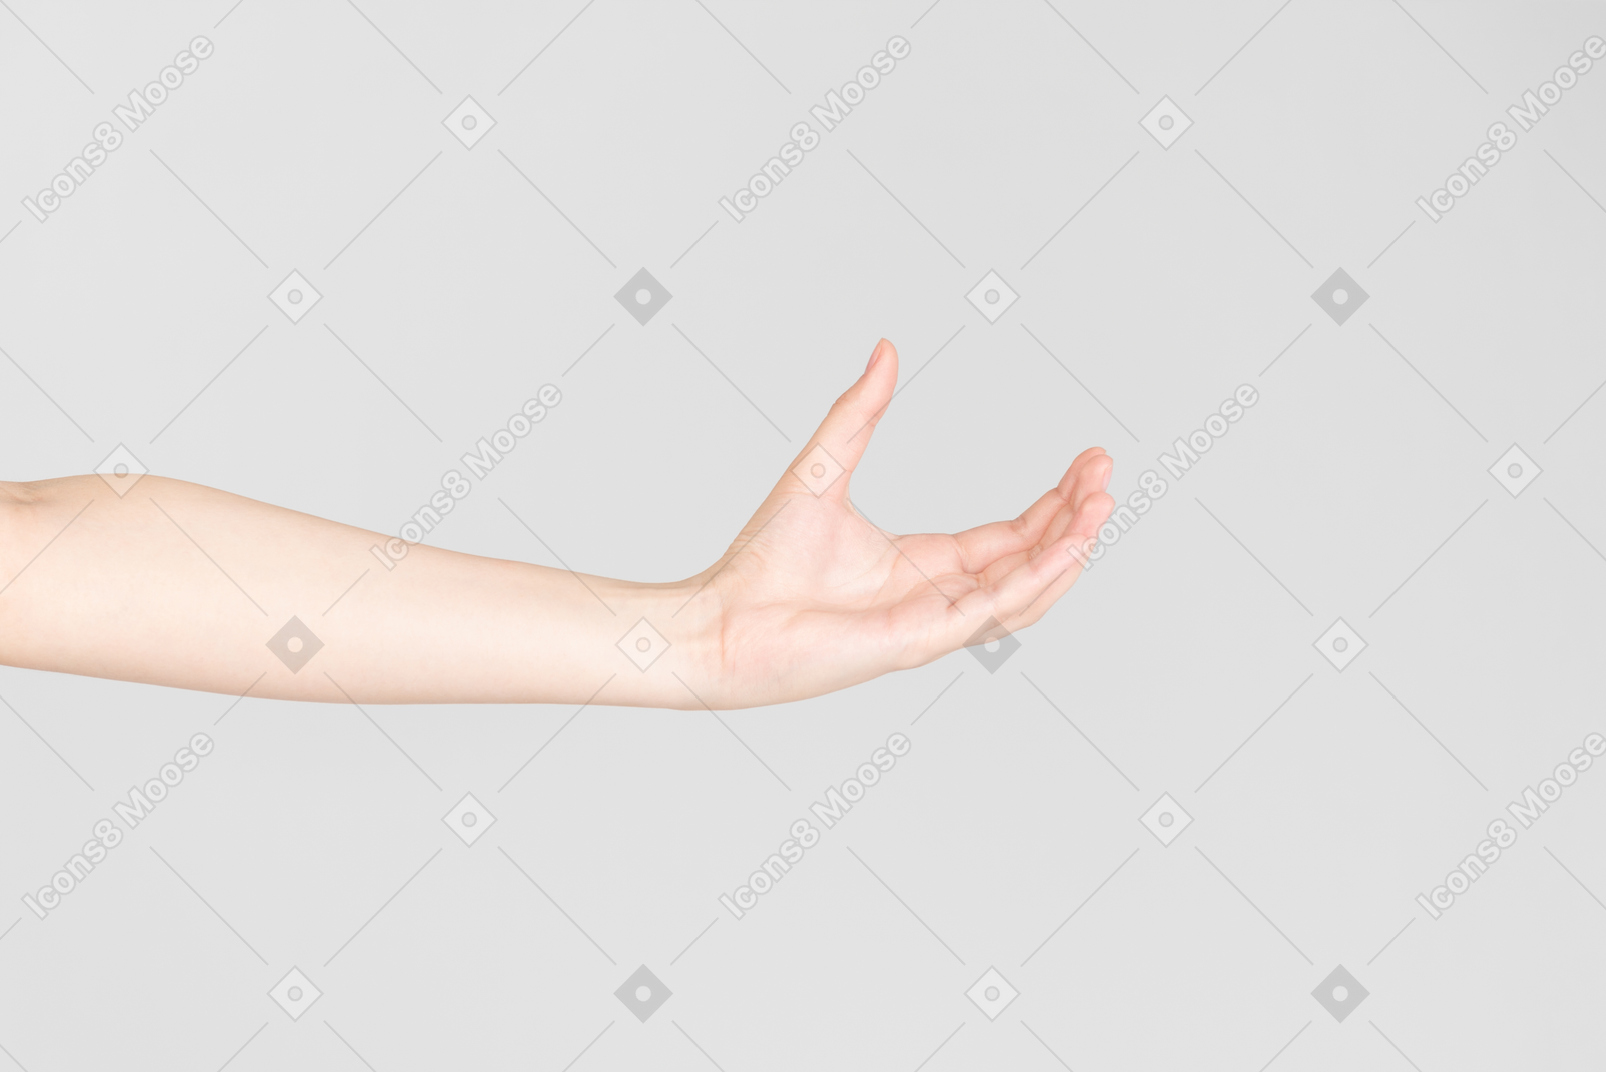 손바닥으로 여성 손의 측면 모습